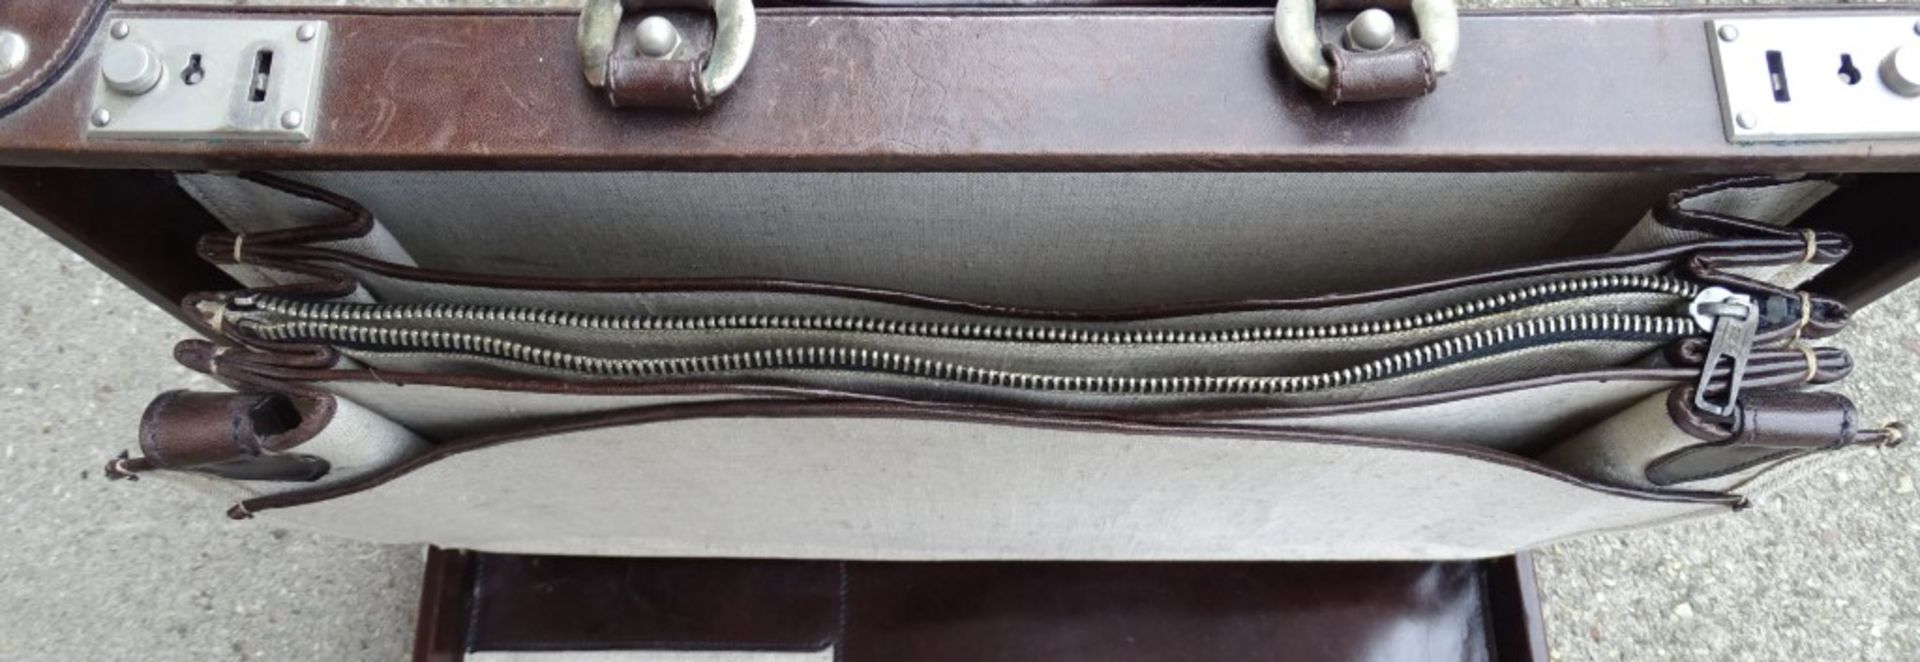 braune "Aigner" Aktentasche, 30x41cm,Alters-u. Gebrauchsspuren - Bild 7 aus 8